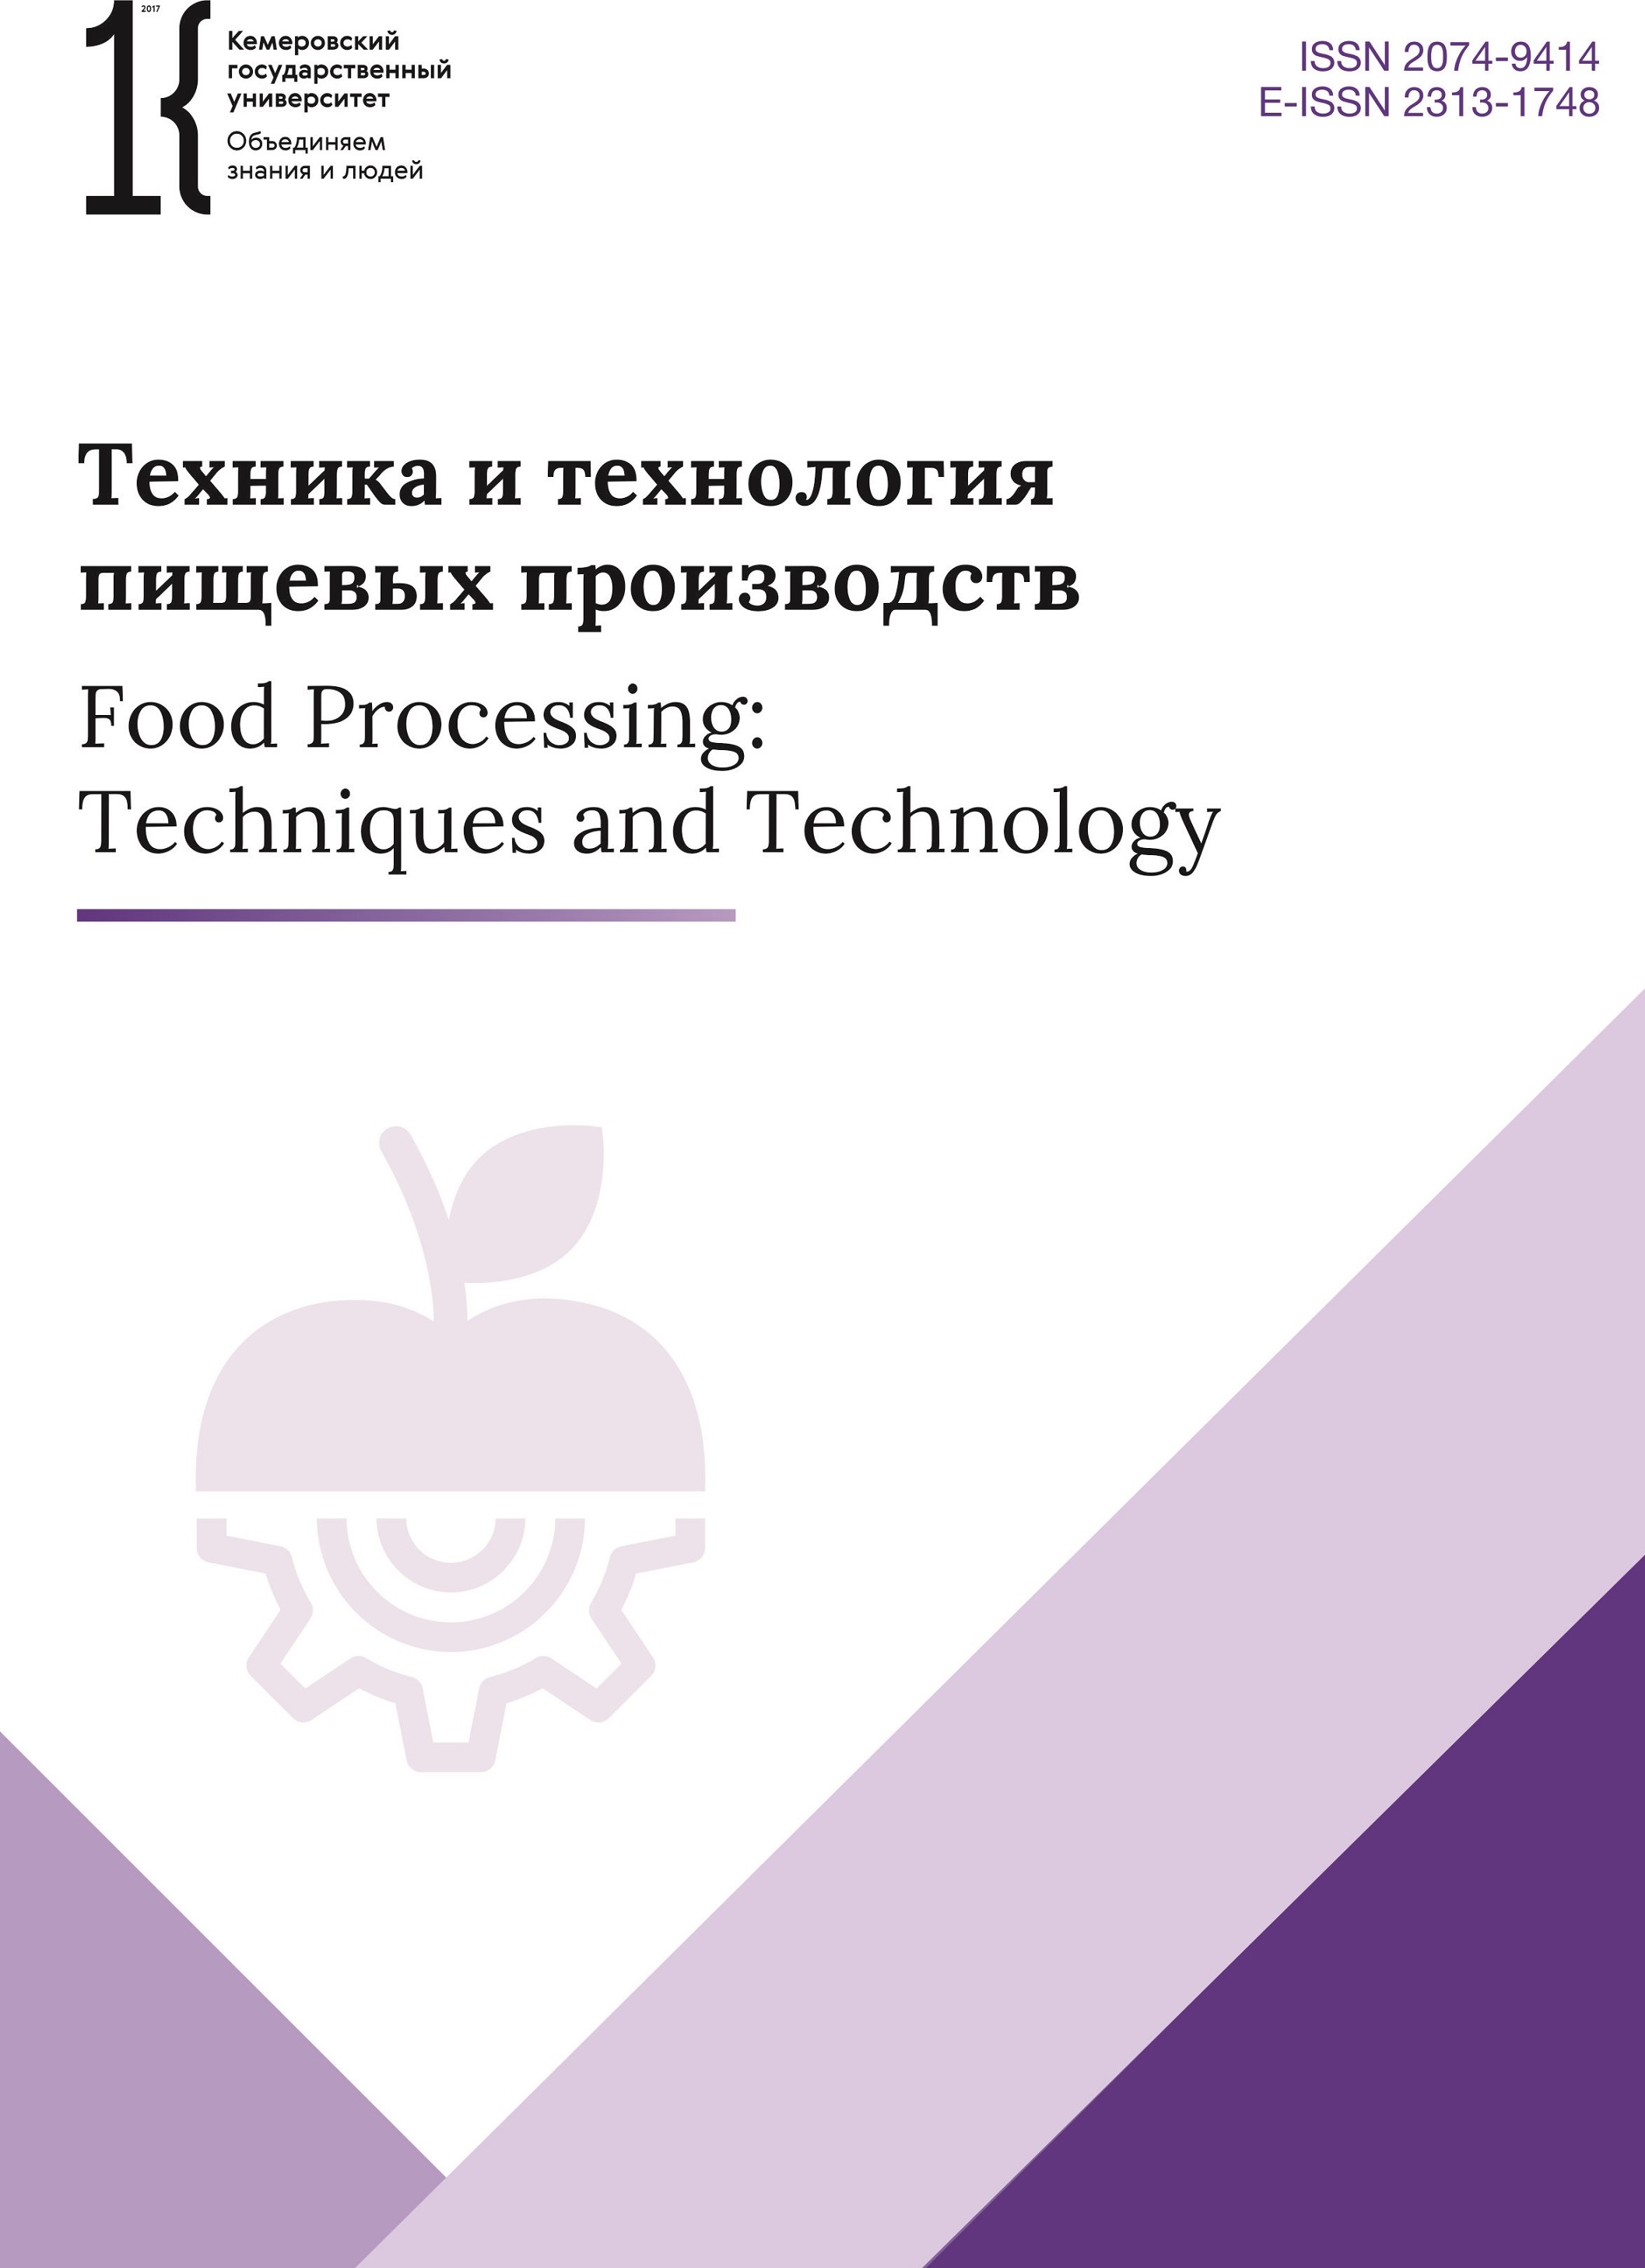             Техника и технология пищевых производств
    